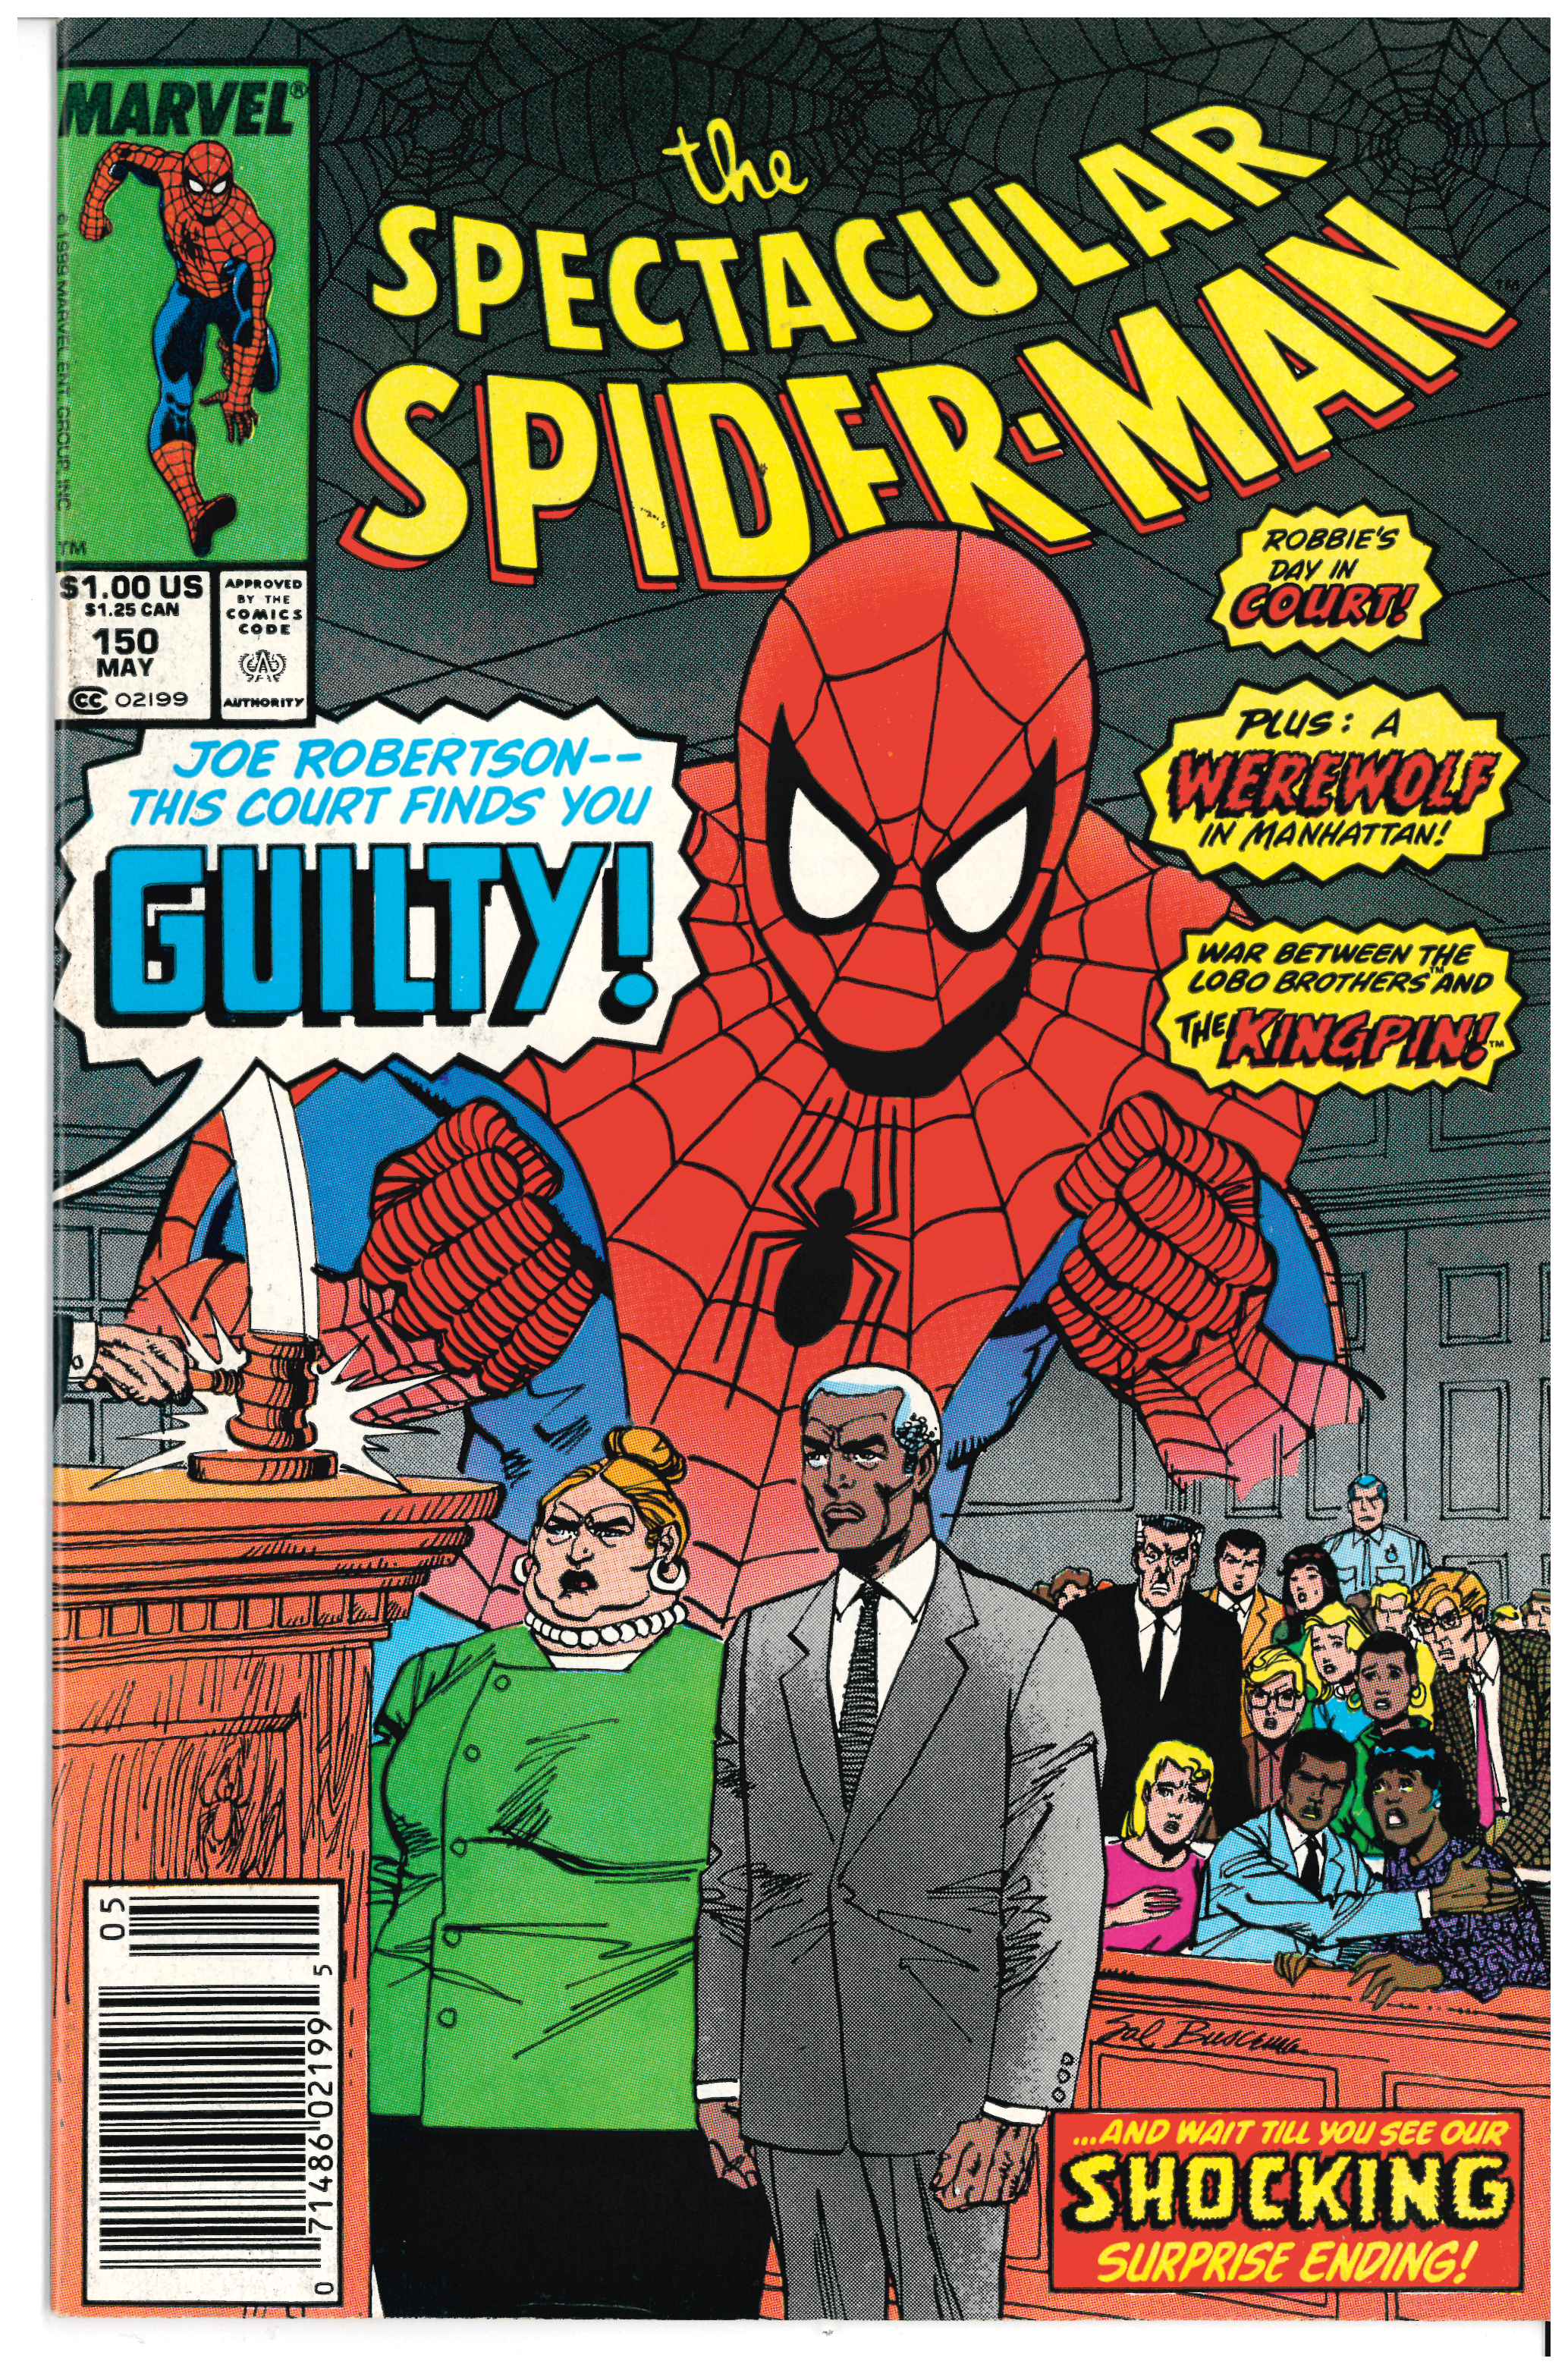 Amazing Spider-Man #150